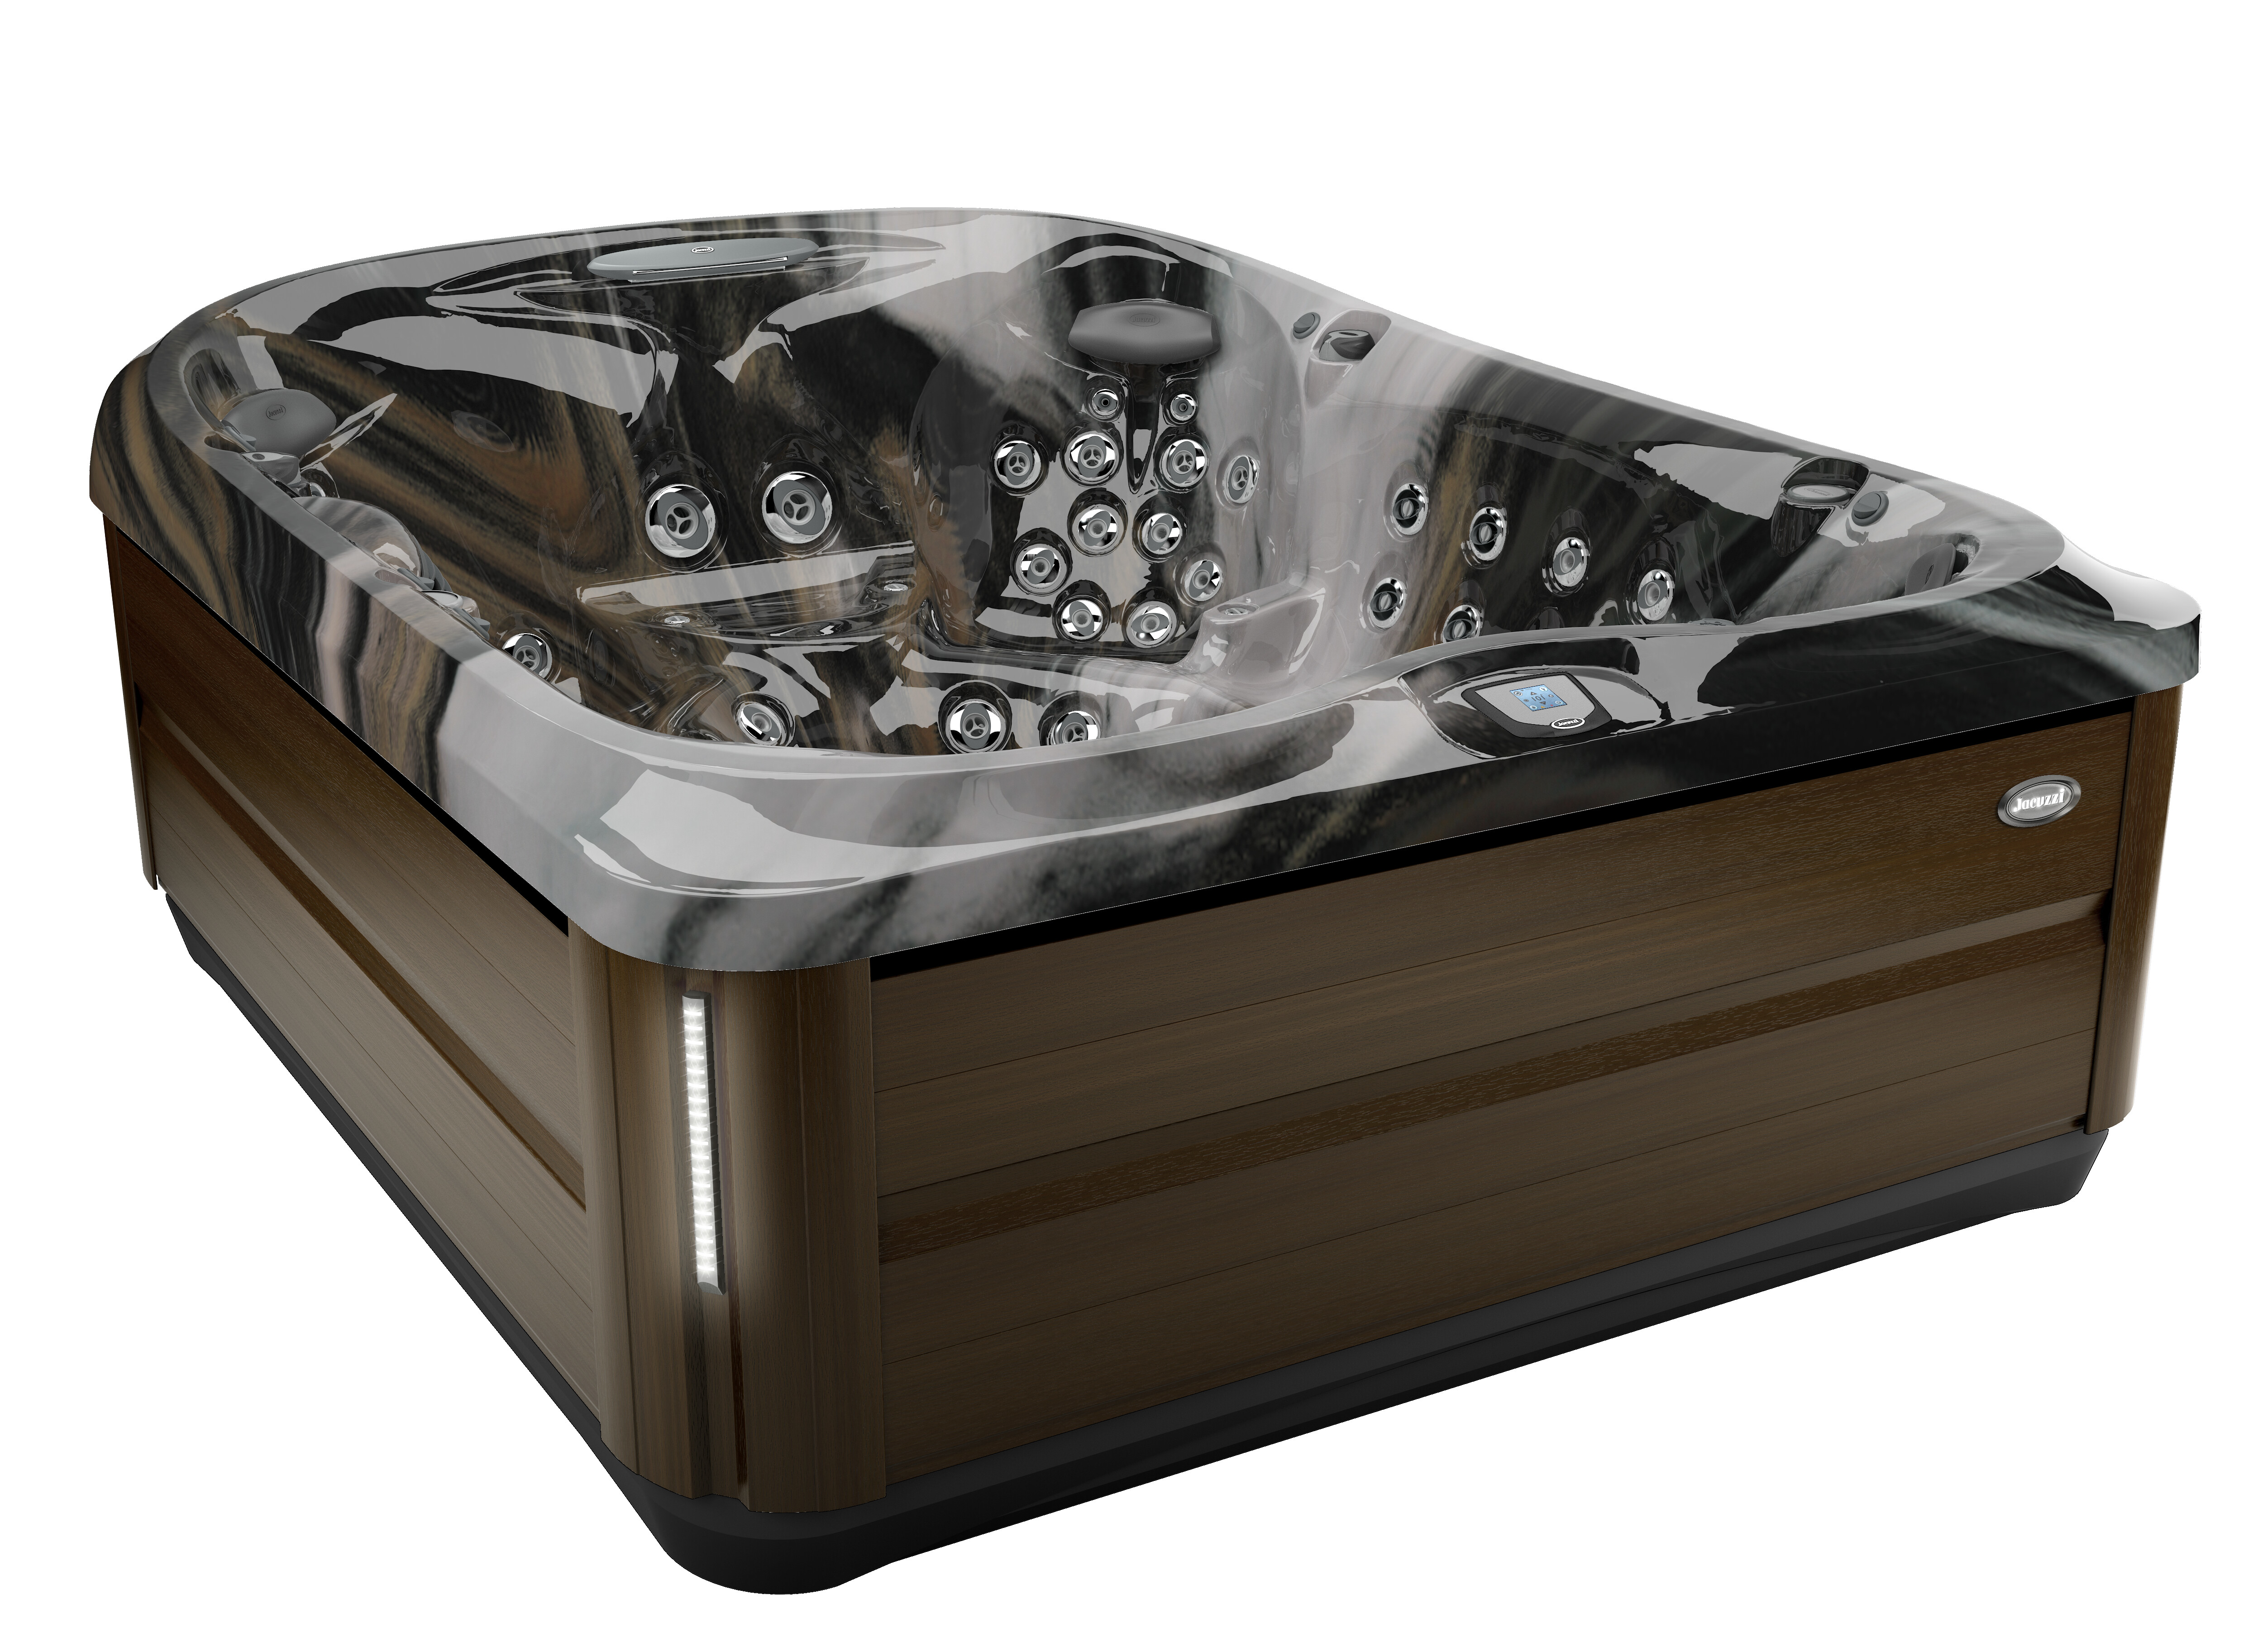 J-495™ Spacious Designer Entertainer's Hot Tub Designer Hot Tub